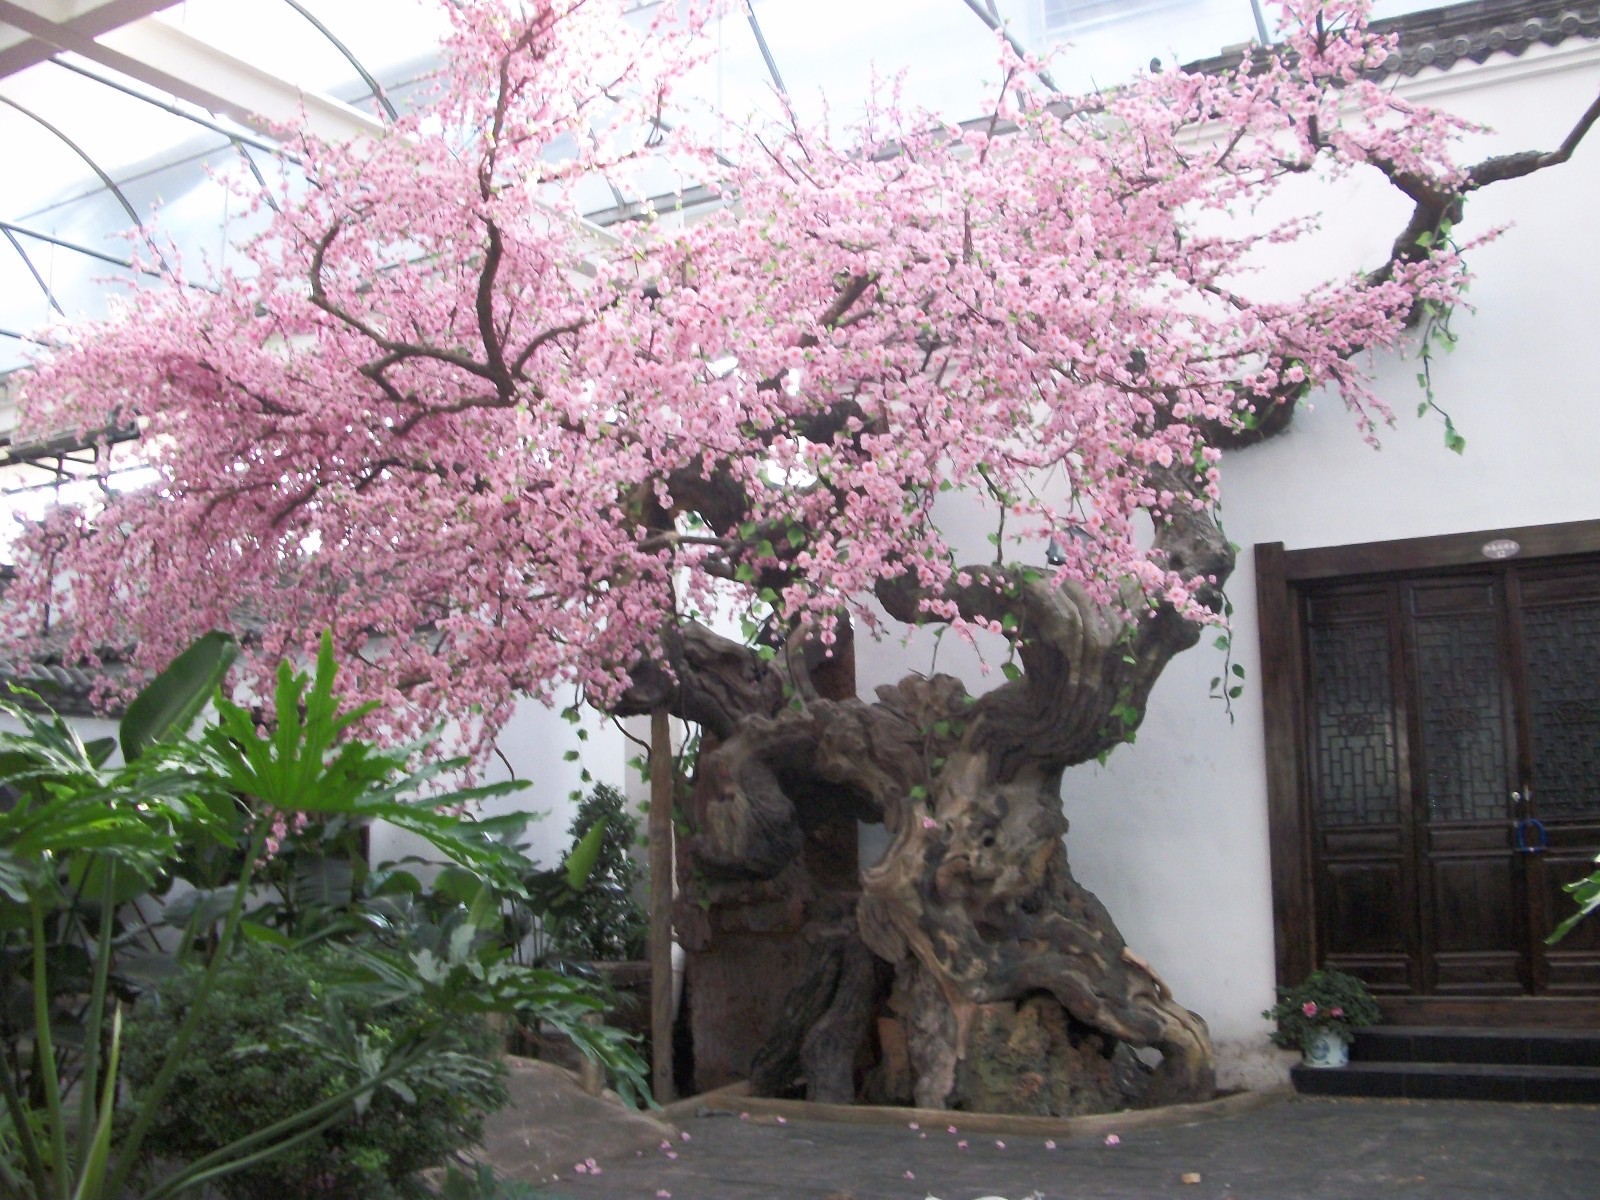 仿真樱花树装饰环境之美